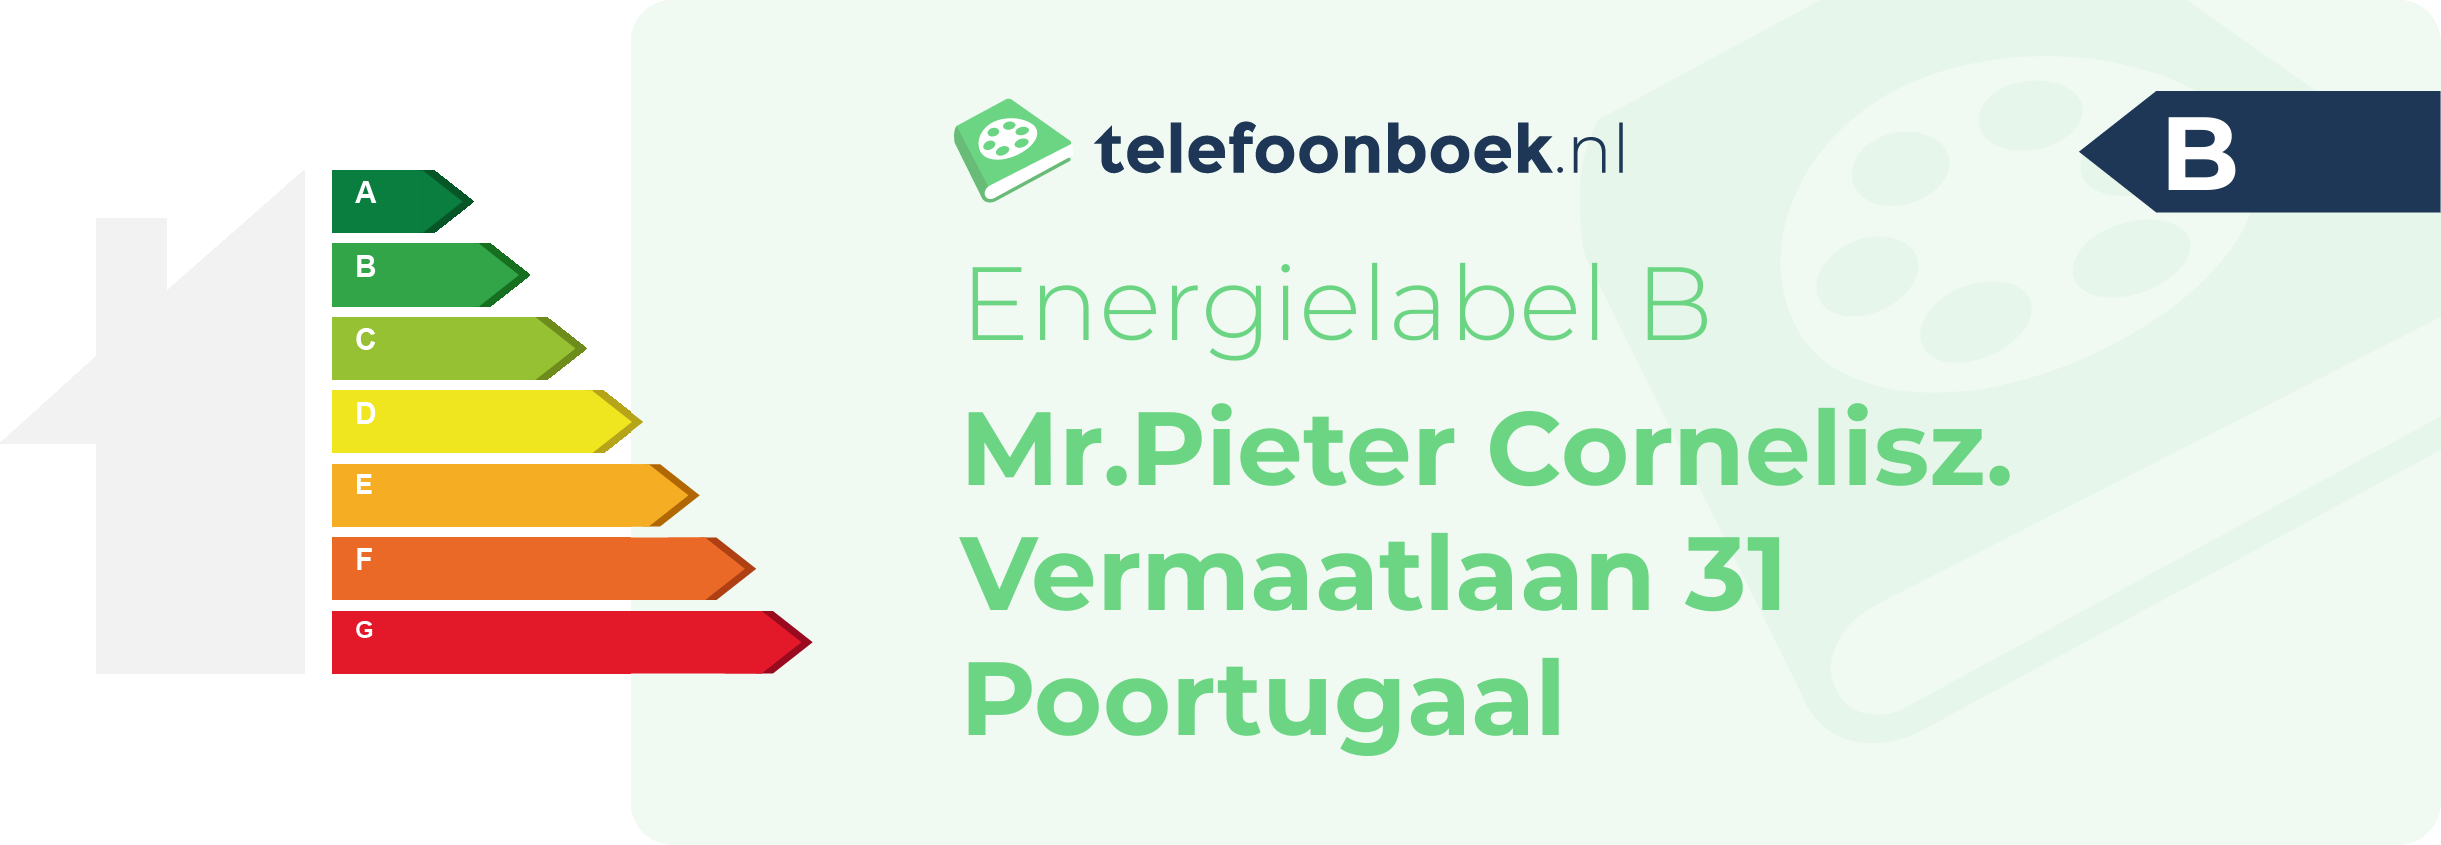 Energielabel Mr.Pieter Cornelisz. Vermaatlaan 31 Poortugaal